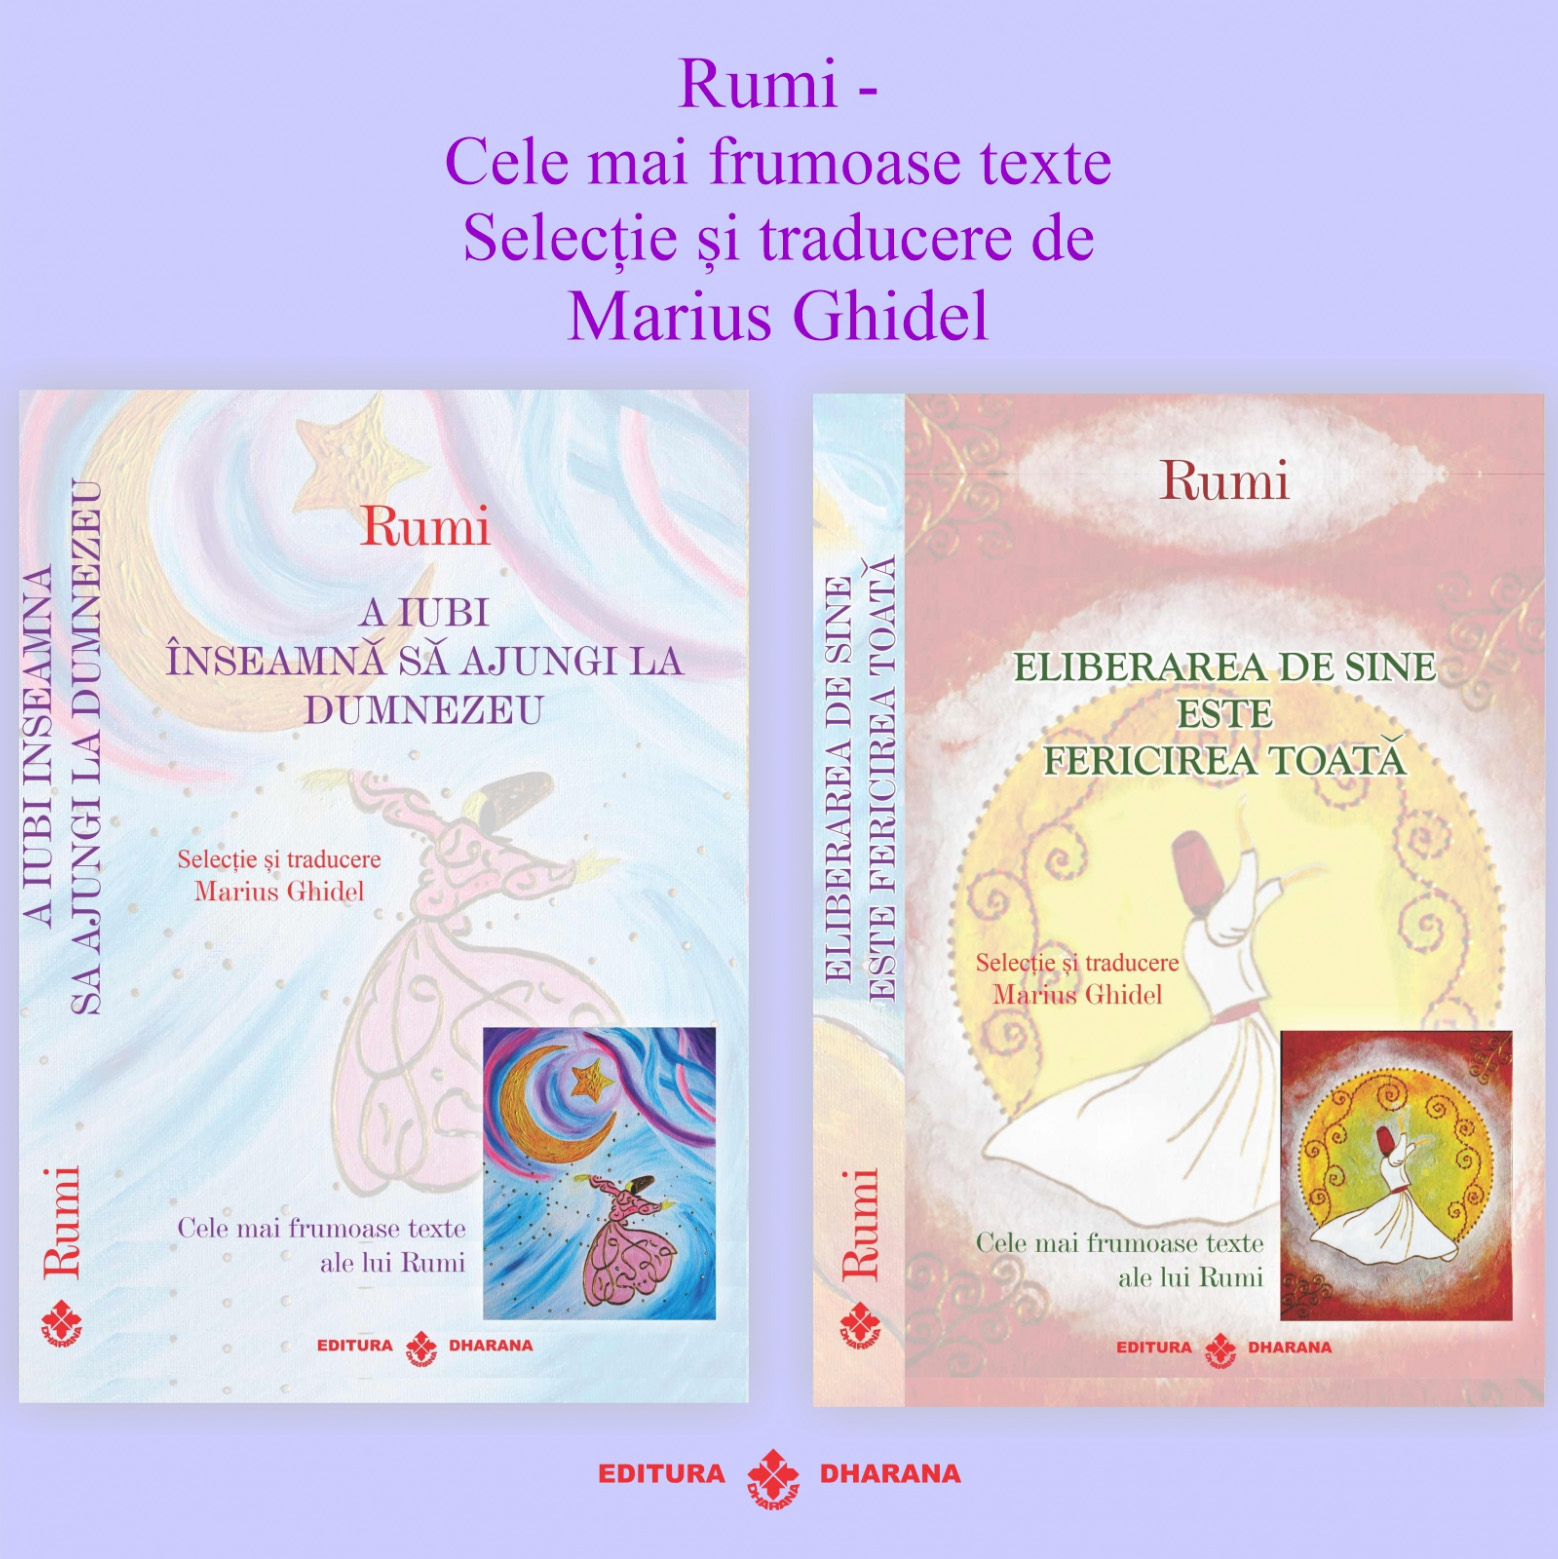 Set carti Rumi – Cele mai frumoase texte: A iubi inseamna sa ajungi la Dumnezeu / Eliberarea de sine este fericirea toata | Rumi De La Carturesti Carti Dezvoltare Personala 2023-05-29